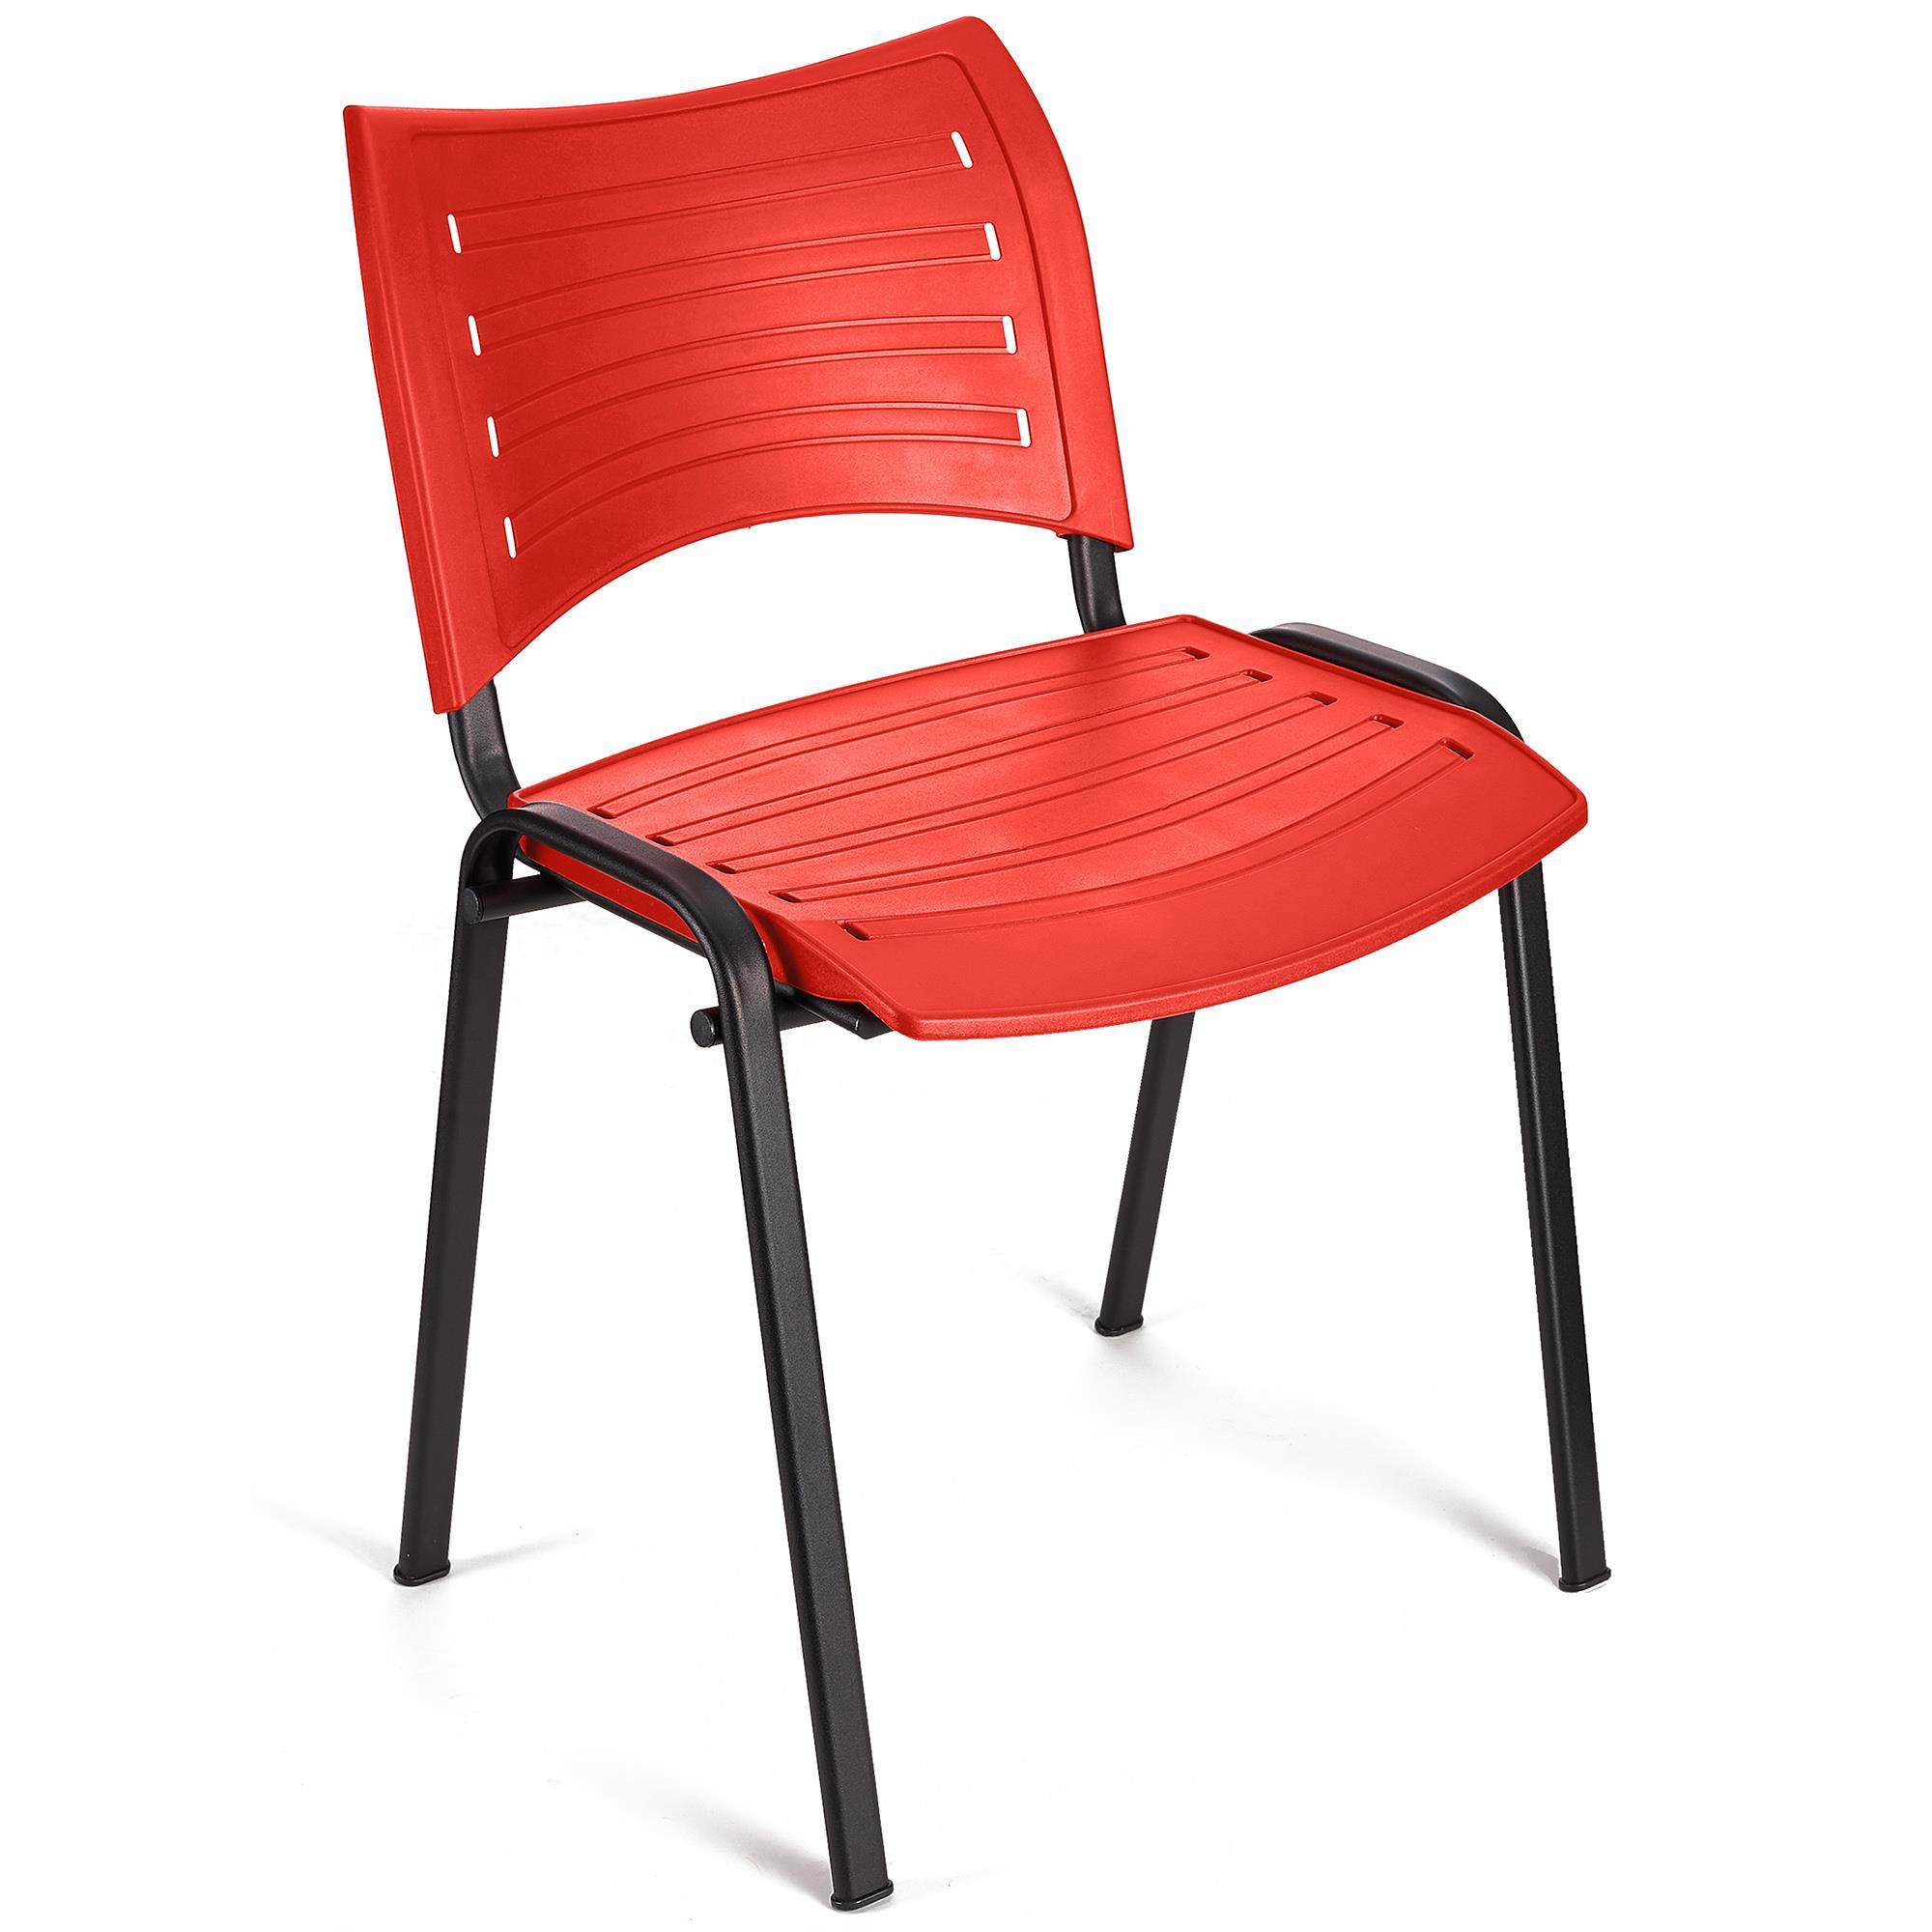 Sedia per Sala Attesa ELVA, Pratica e impilabile, Ottima qualità, colore Rosso e gambe Nere